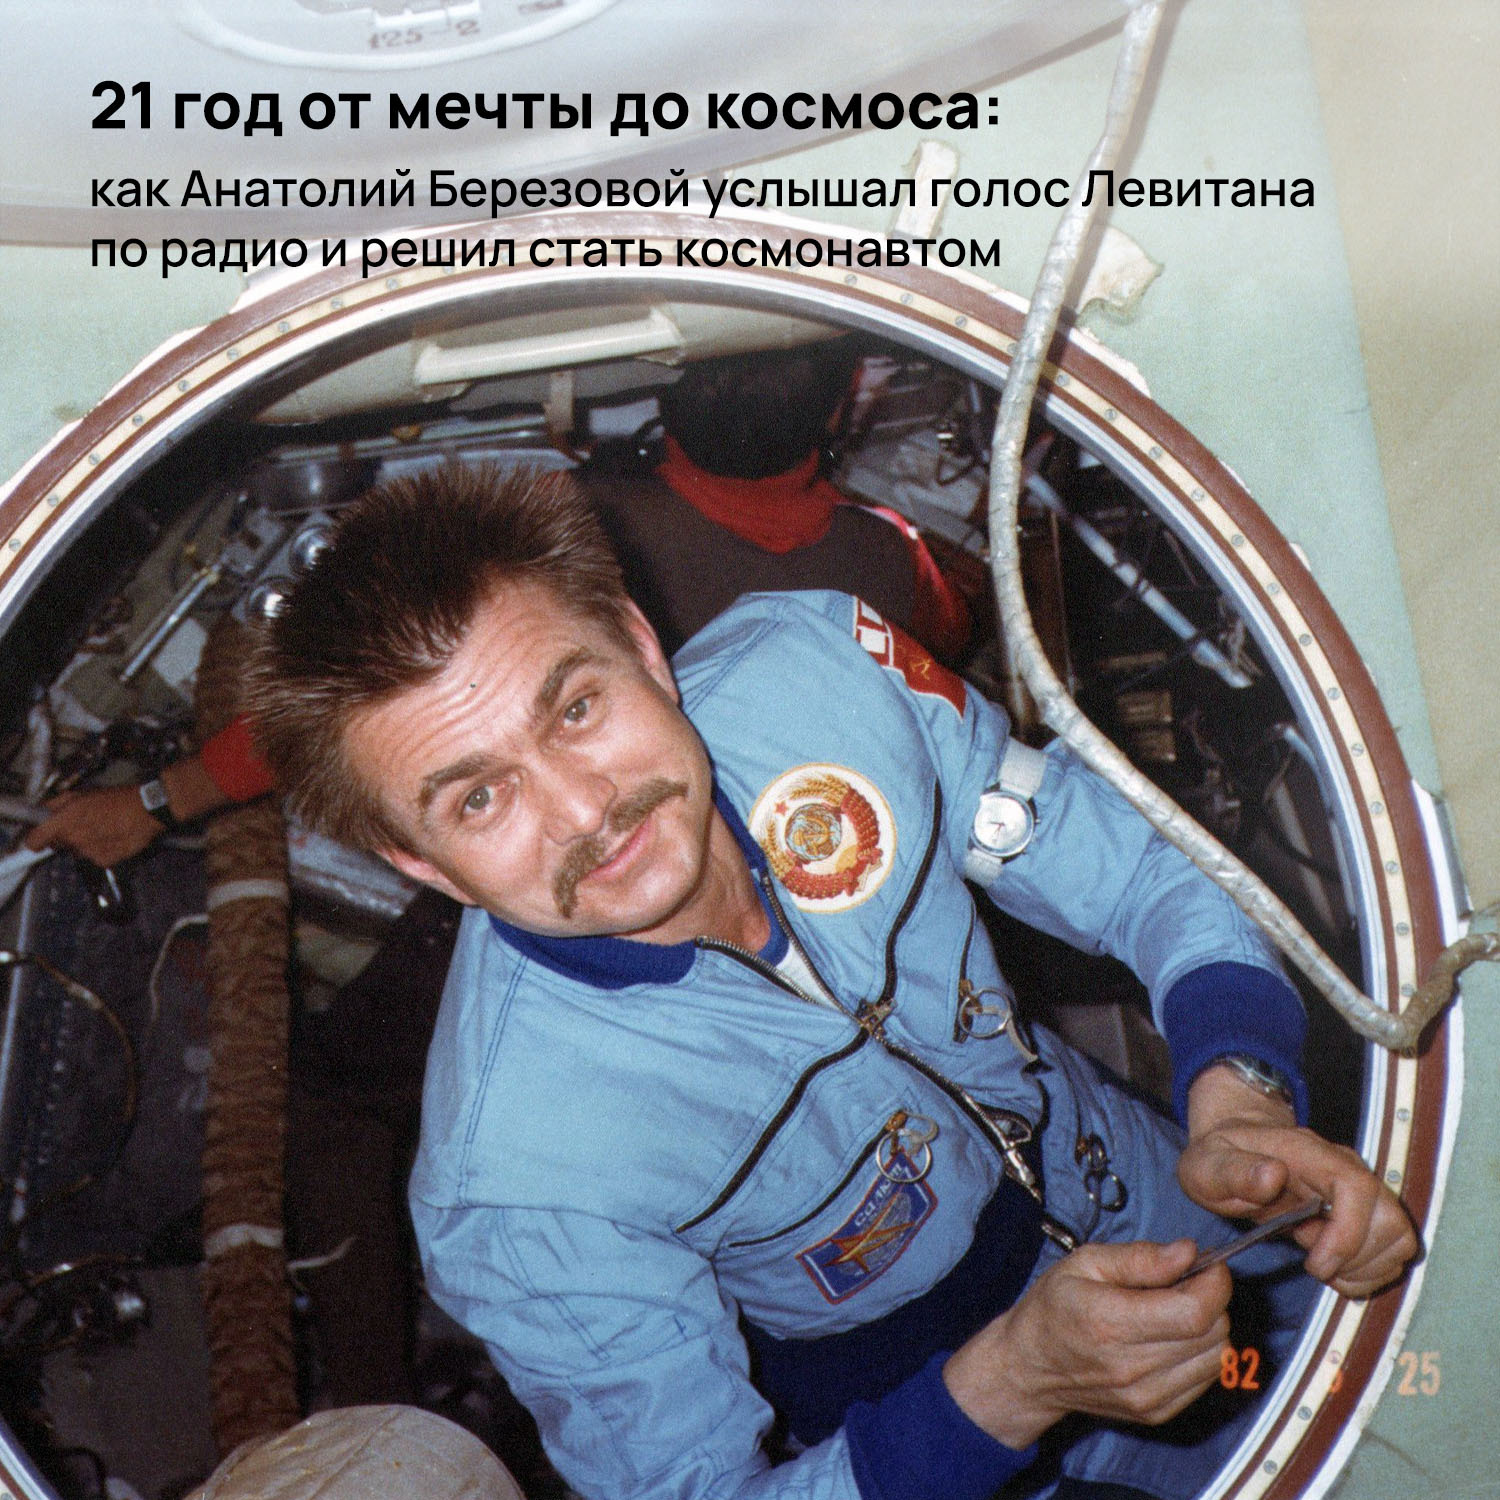 Космонавт самый длительный полет в космос. Летчик-космонавт а.н.березовой.